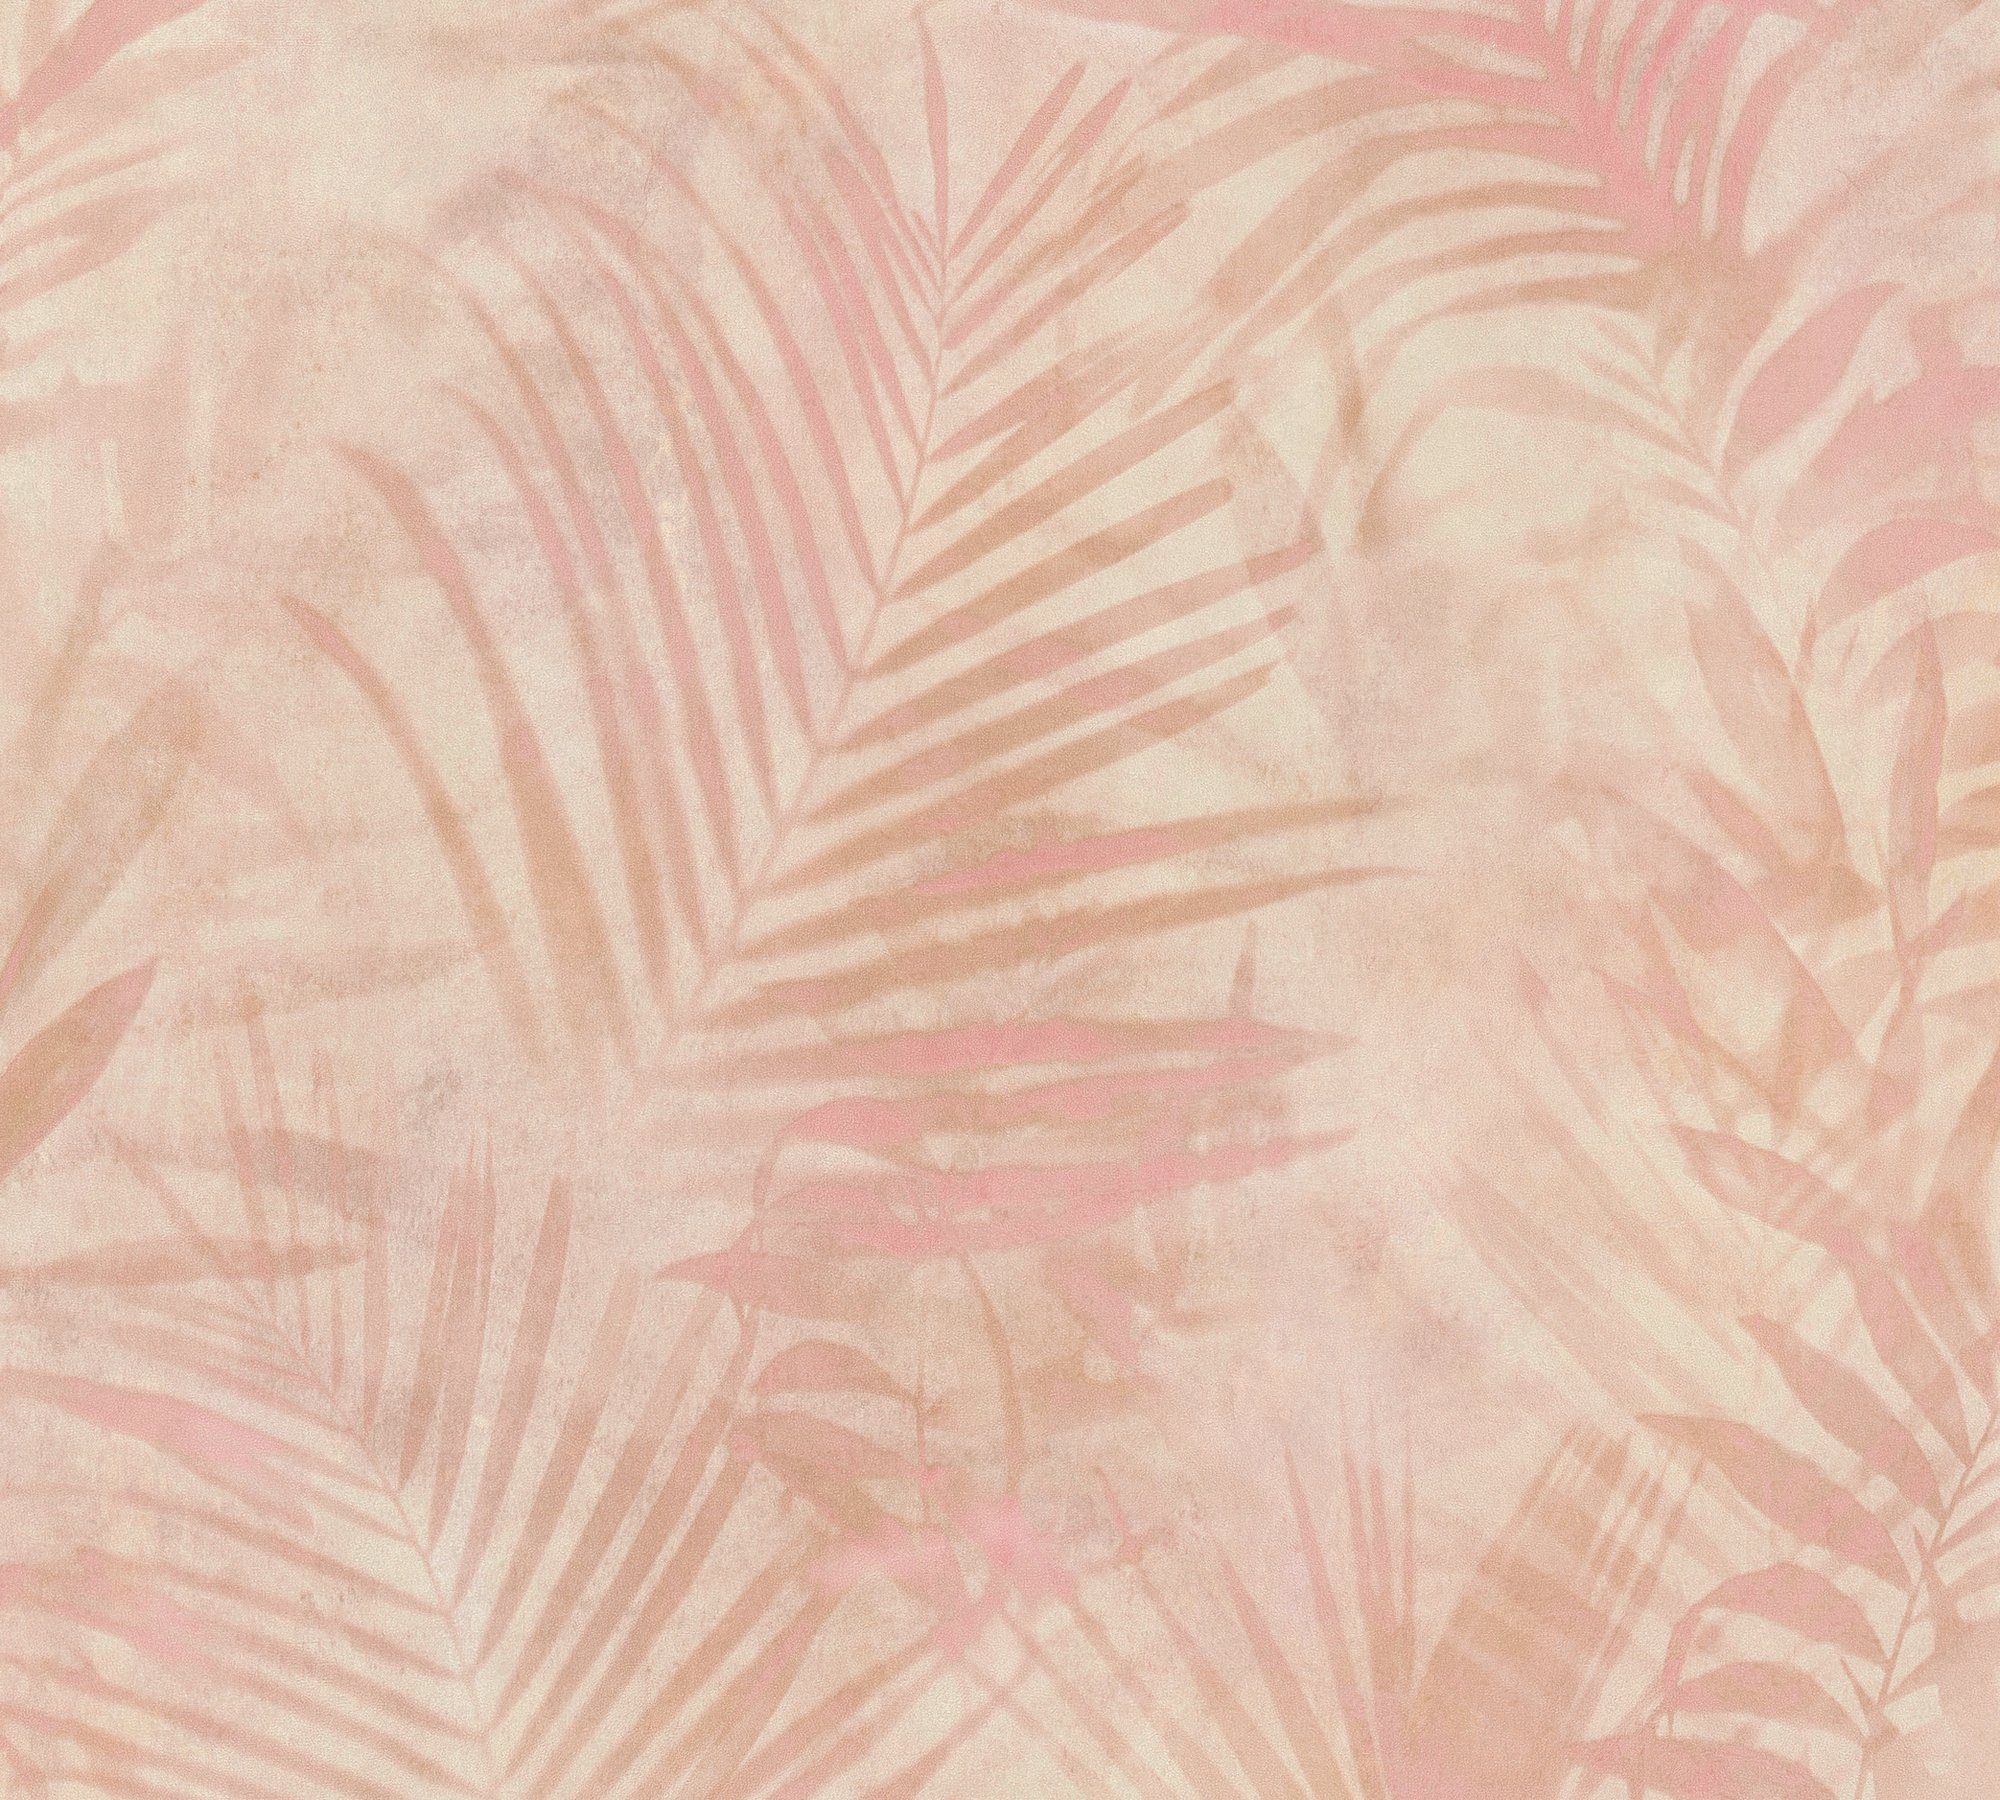 Tropical Neue Palmenblättern, Palmen A.S. rosa Création floral, 2.0 Dschungeltapete Bude mit Vliestapete Tapete Concret